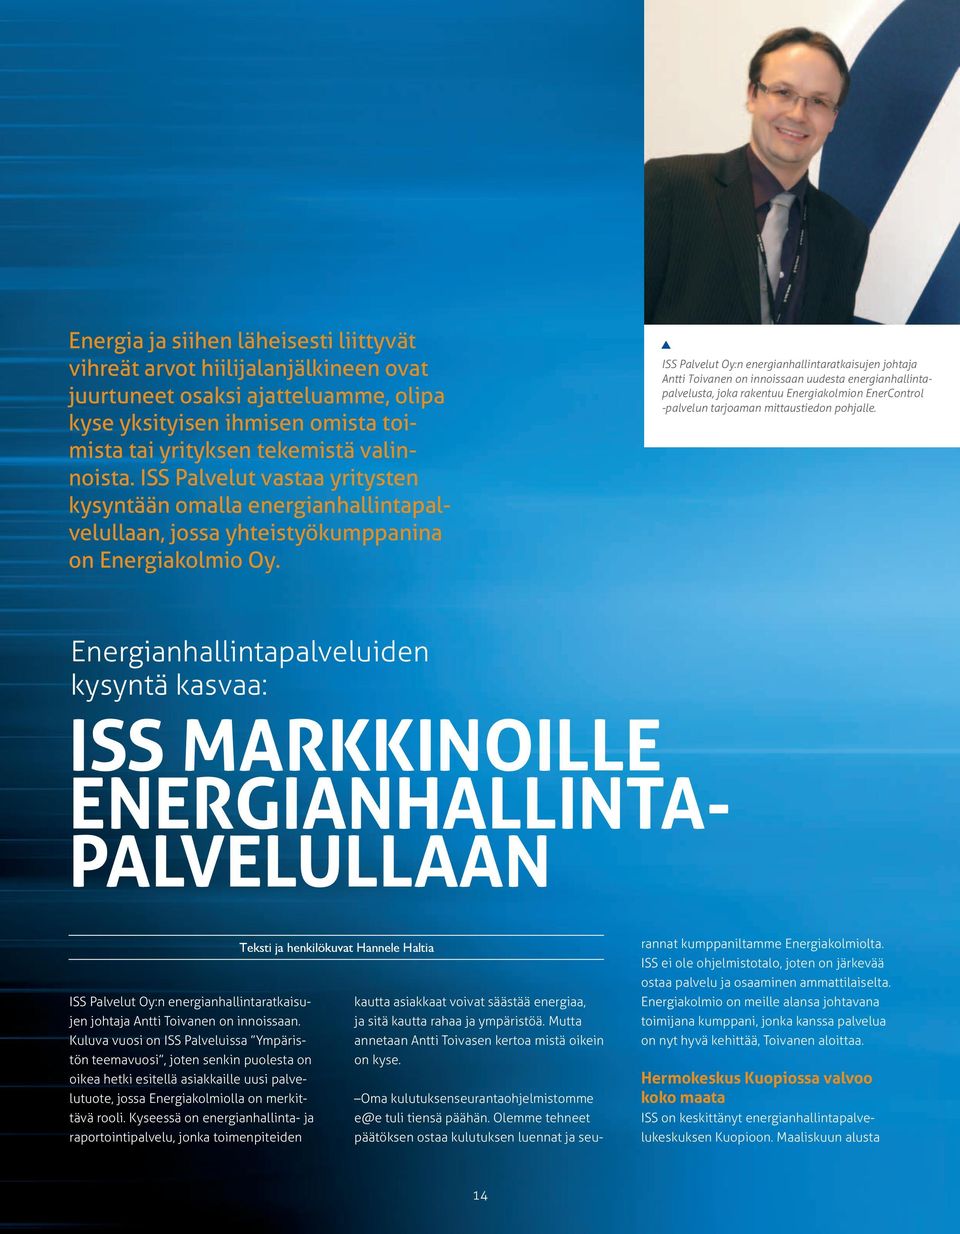 ISS Palvelut Oy:n energianhallintaratkaisujen johtaja Antti Toivanen on innoissaan uudesta energianhallintapalvelusta, joka rakentuu Energiakolmion EnerControl -palvelun tarjoaman mittaustiedon